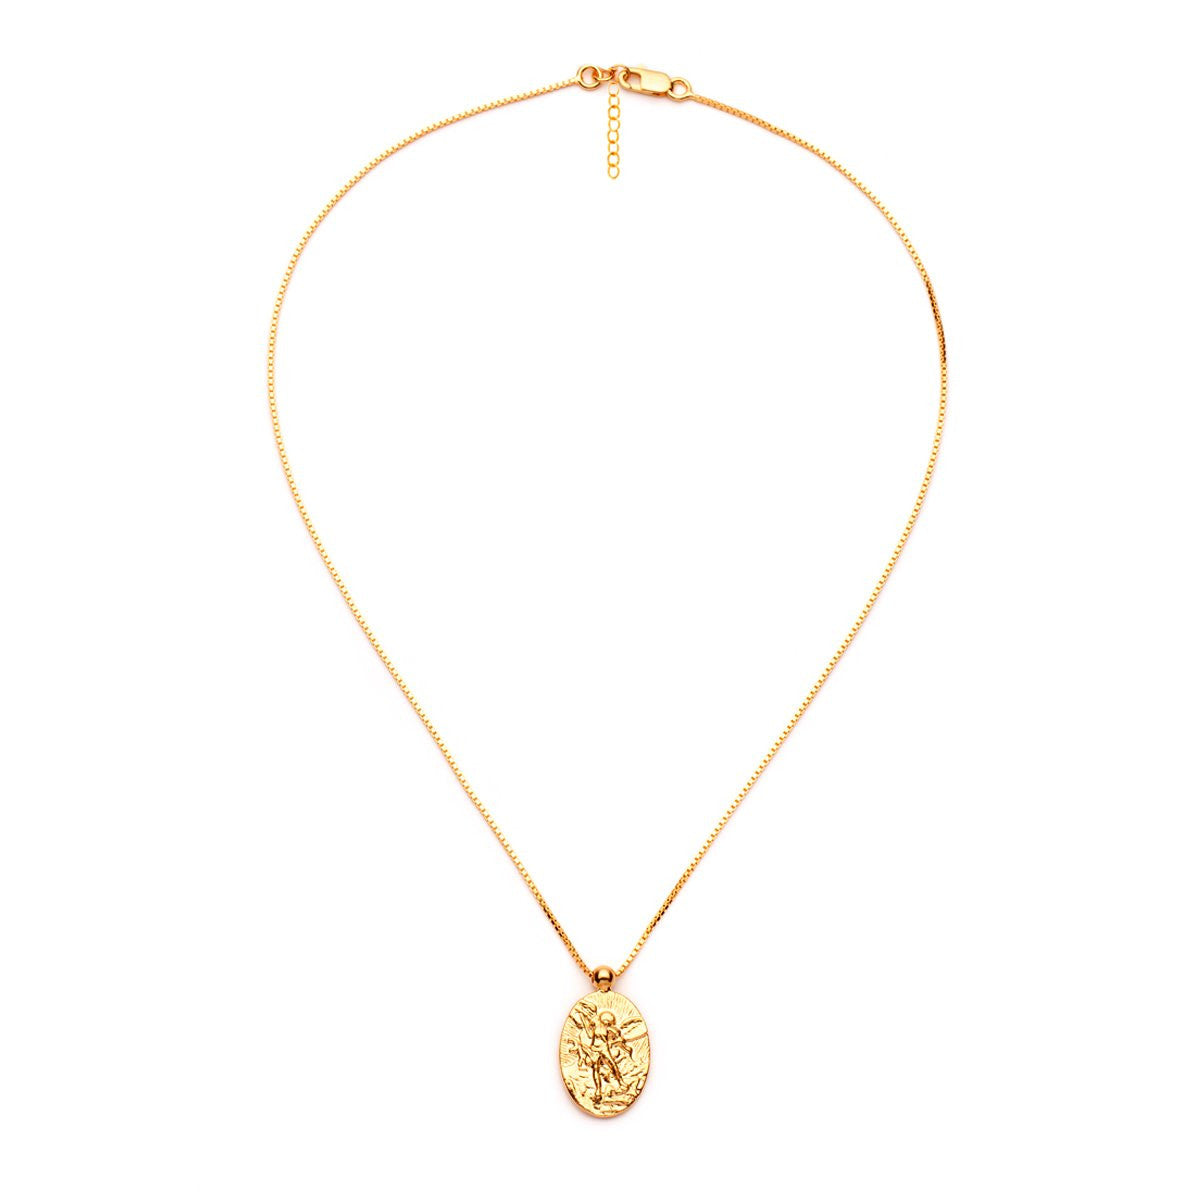 Amber Sceats Cloudia Necklace - ASN0758G | Ice Jewellery Australia